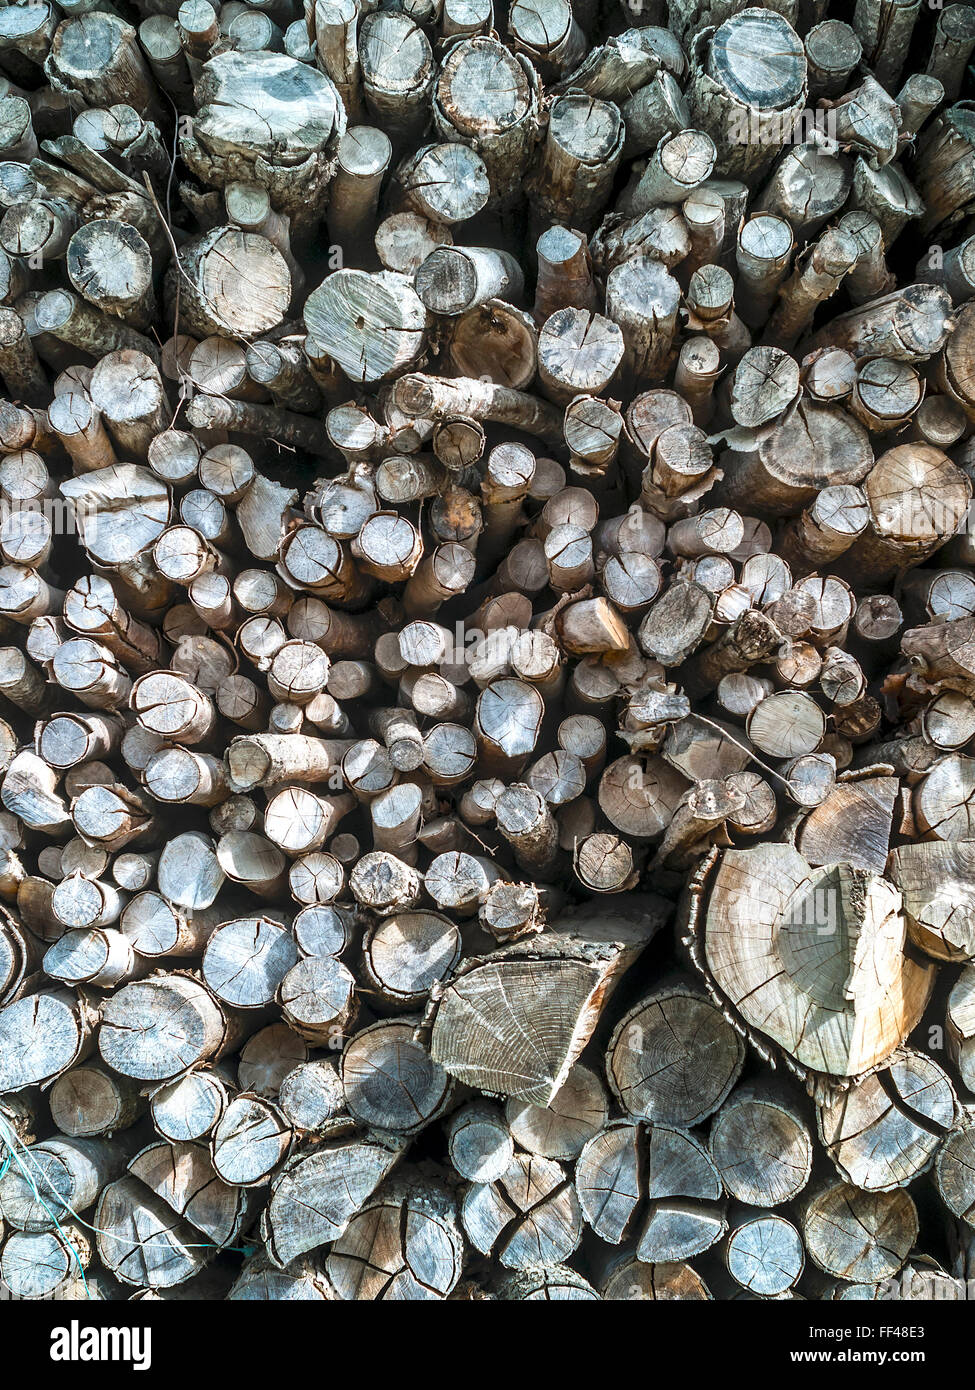 Palo di legno / logs per uso domestico di legna da ardere, Francia. Foto Stock